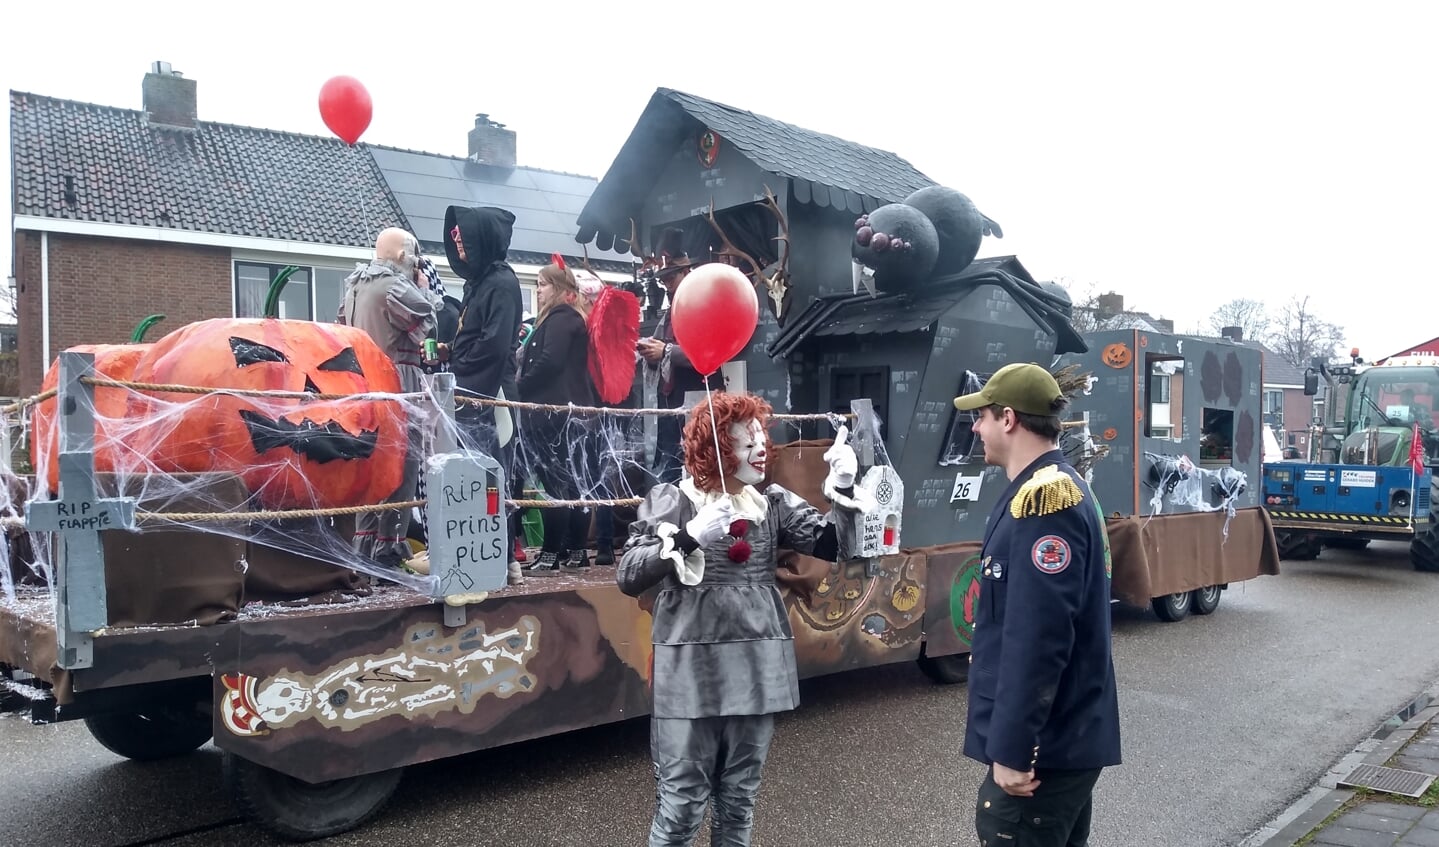 Voorkomen Creatie haar Kleurrijke carnavalsoptocht in Odijk brengt honderden mensen op de been -  Bunniks Nieuws | Nieuws uit de regio Bunnik